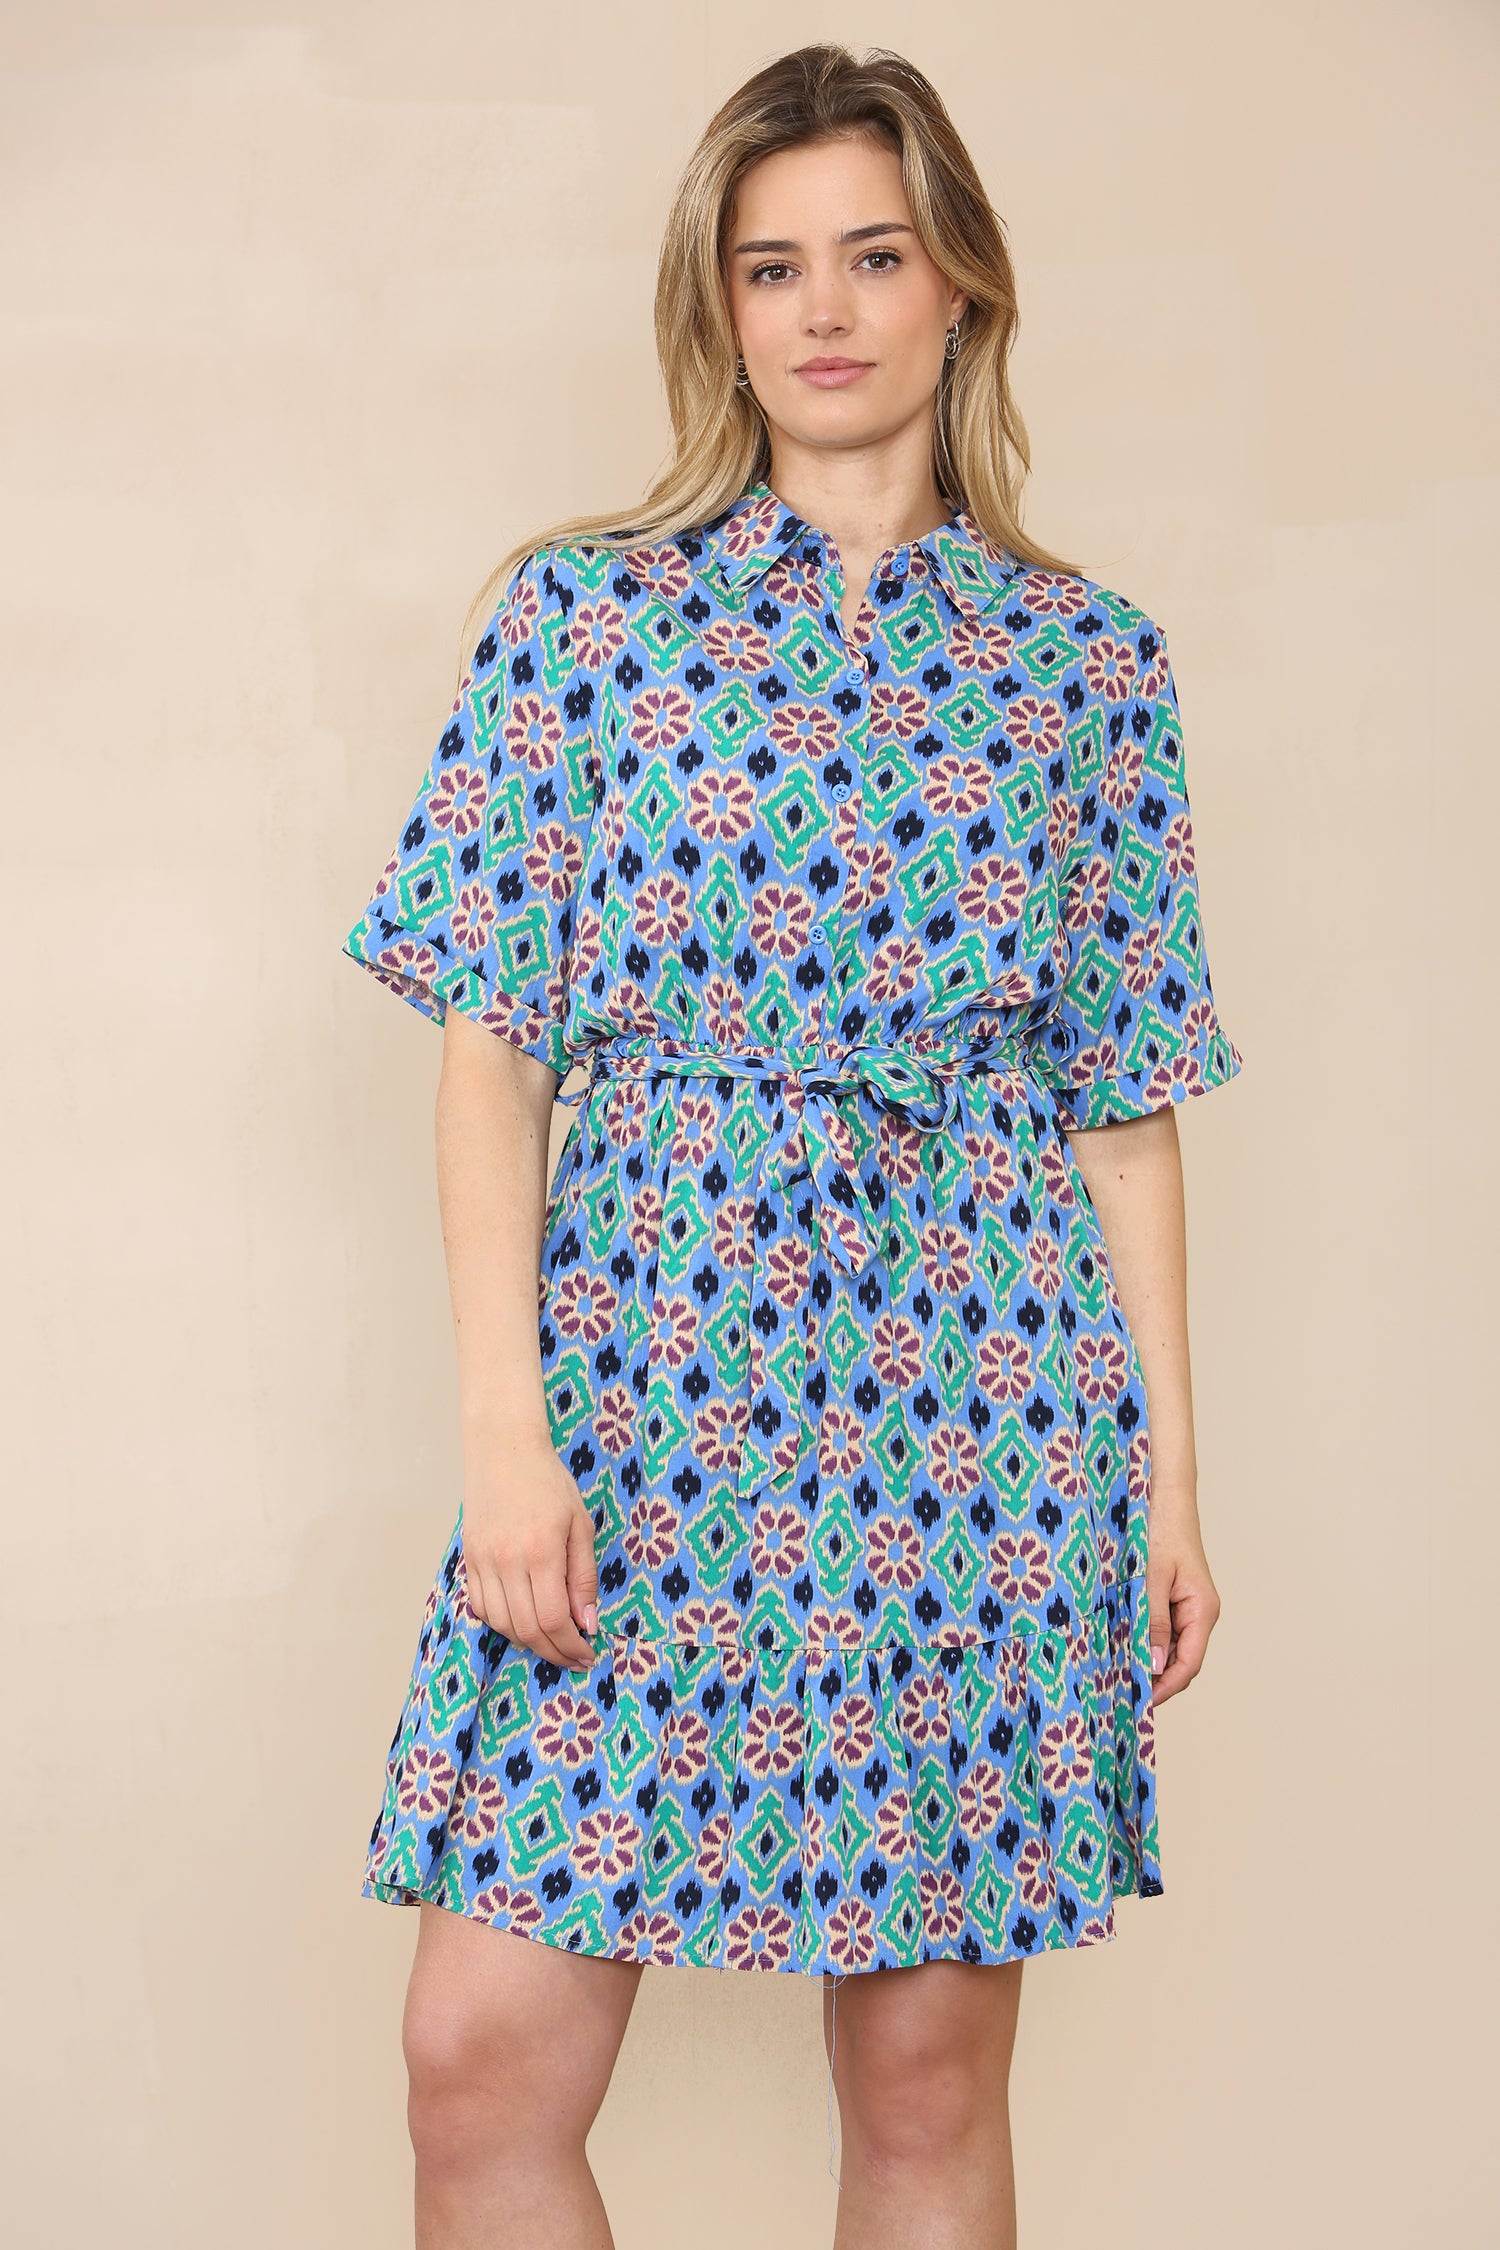 Love Sunshine Blue Floral Patterned Print Short Sleeve Shirt Dress LS-1700